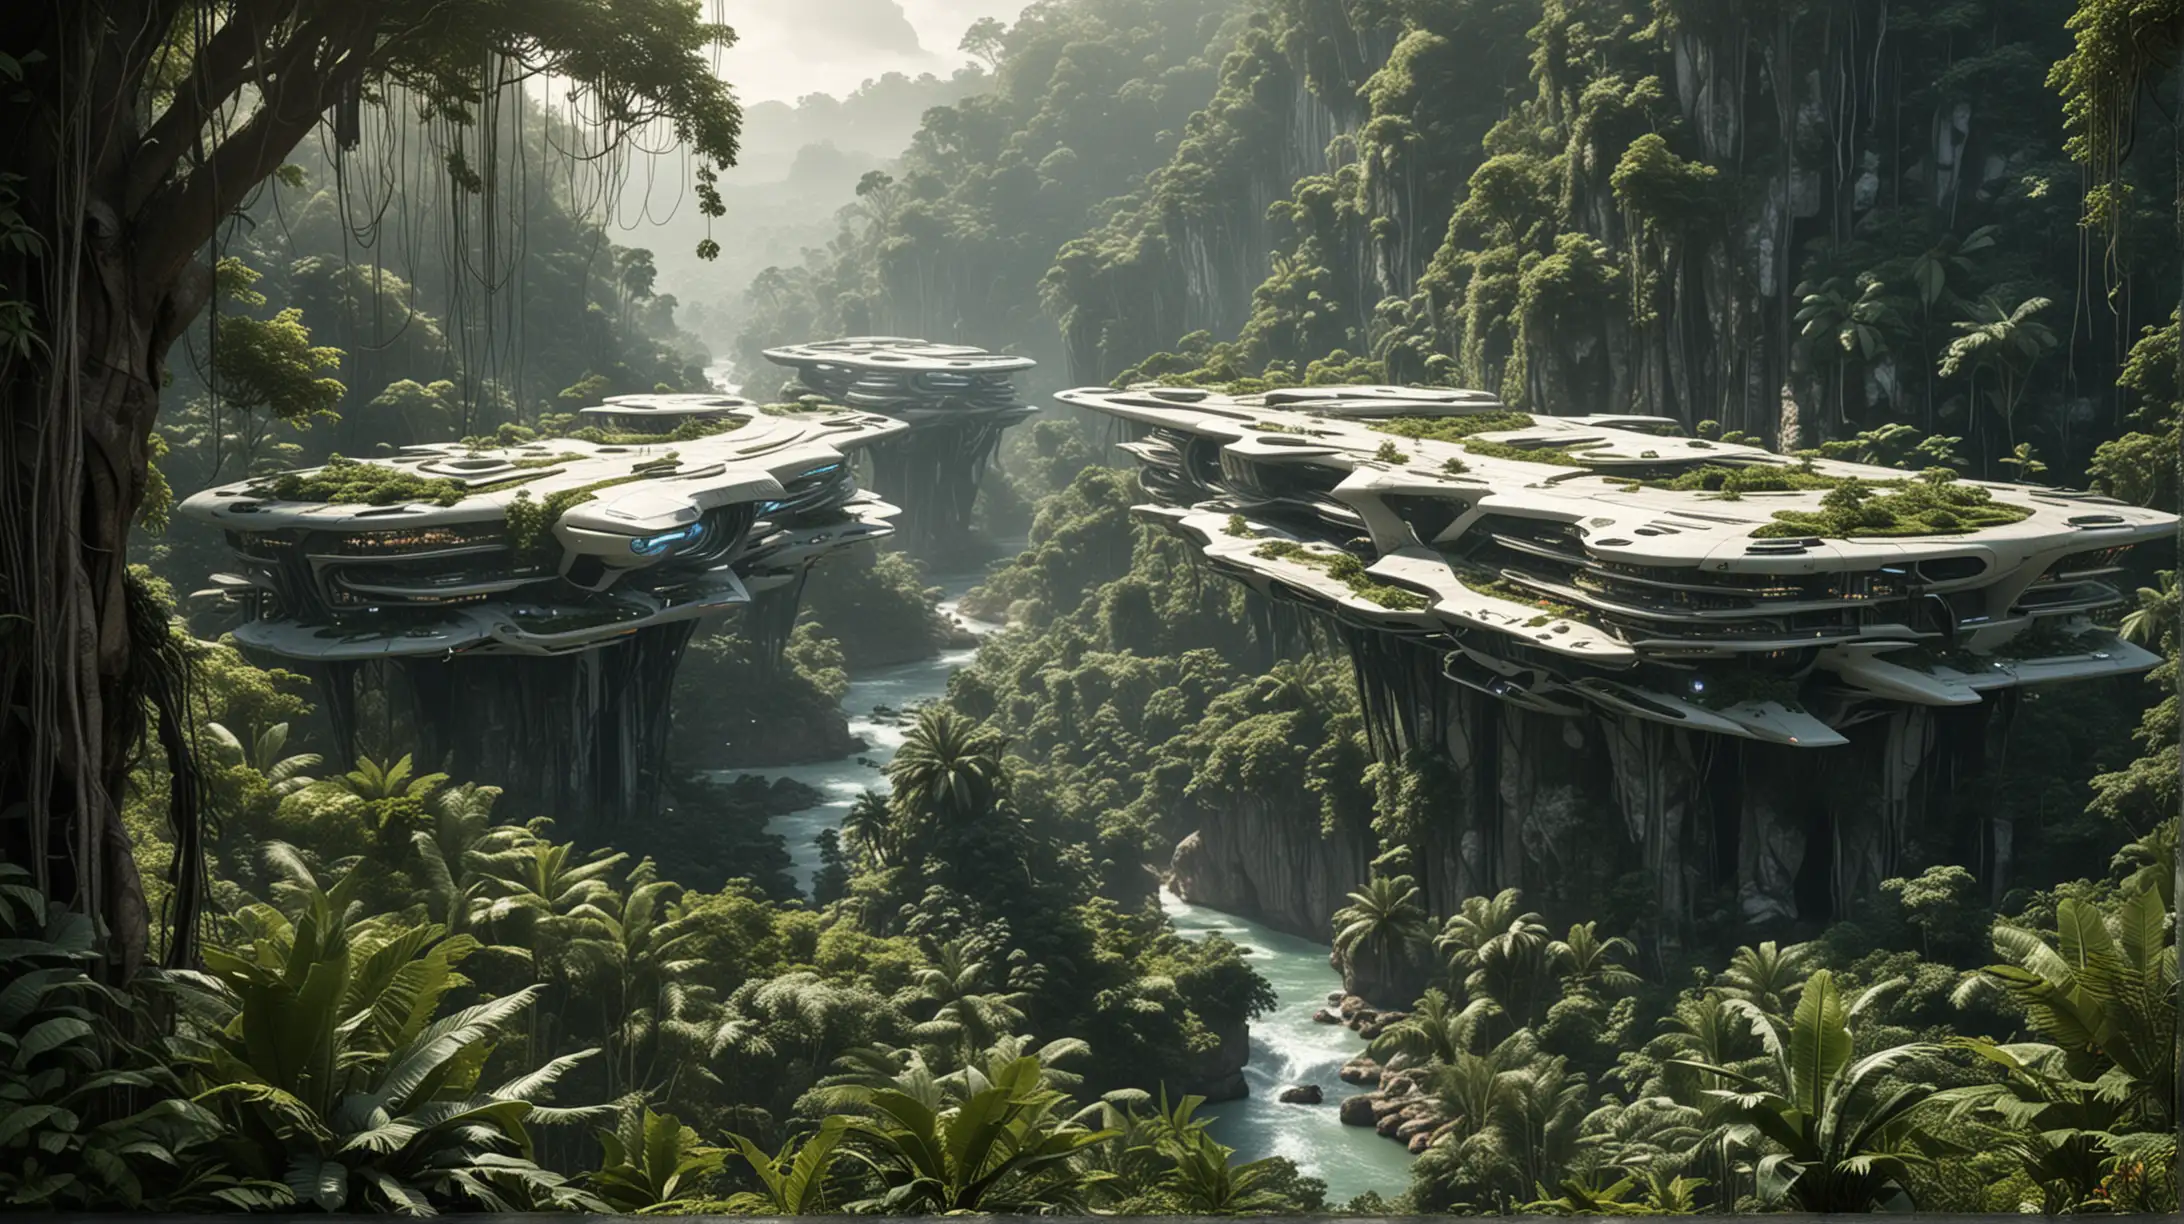 Futuristic Mega Project in the Jungle